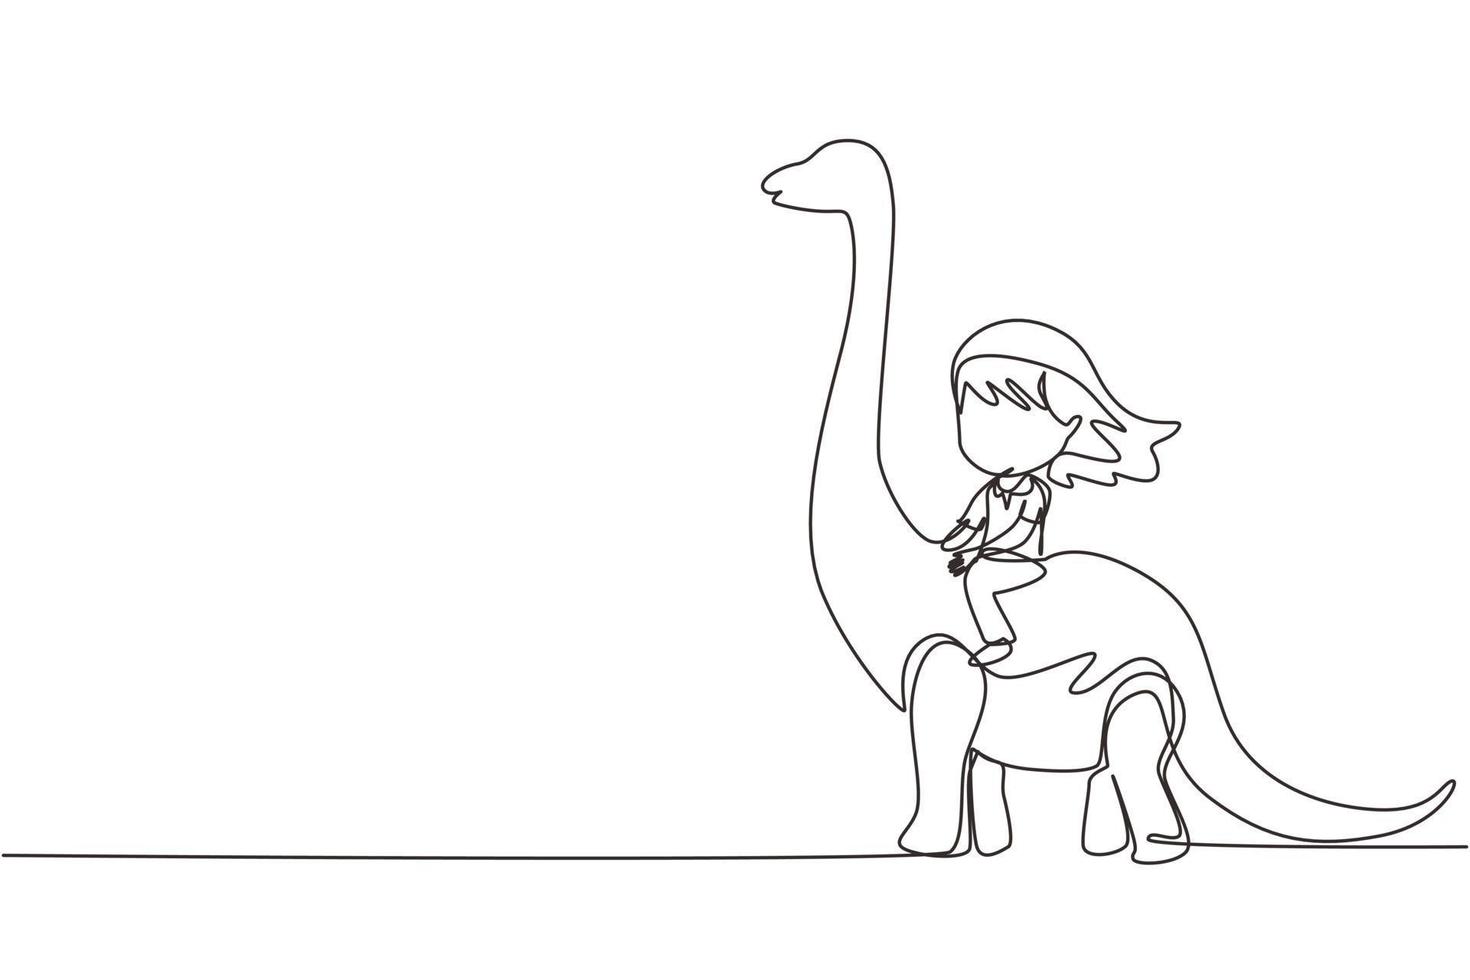 einzelne durchgehende Linie, die Höhlenmenschen des kleinen Mädchens zeichnet, die Brontosaurus reiten. Junges Kind, das auf dem Rücken eines Dinosauriers sitzt. altes menschliches lebenskonzept. dynamische einzeilige abgehobene betragsgrafikdesign-vektorillustration vektor